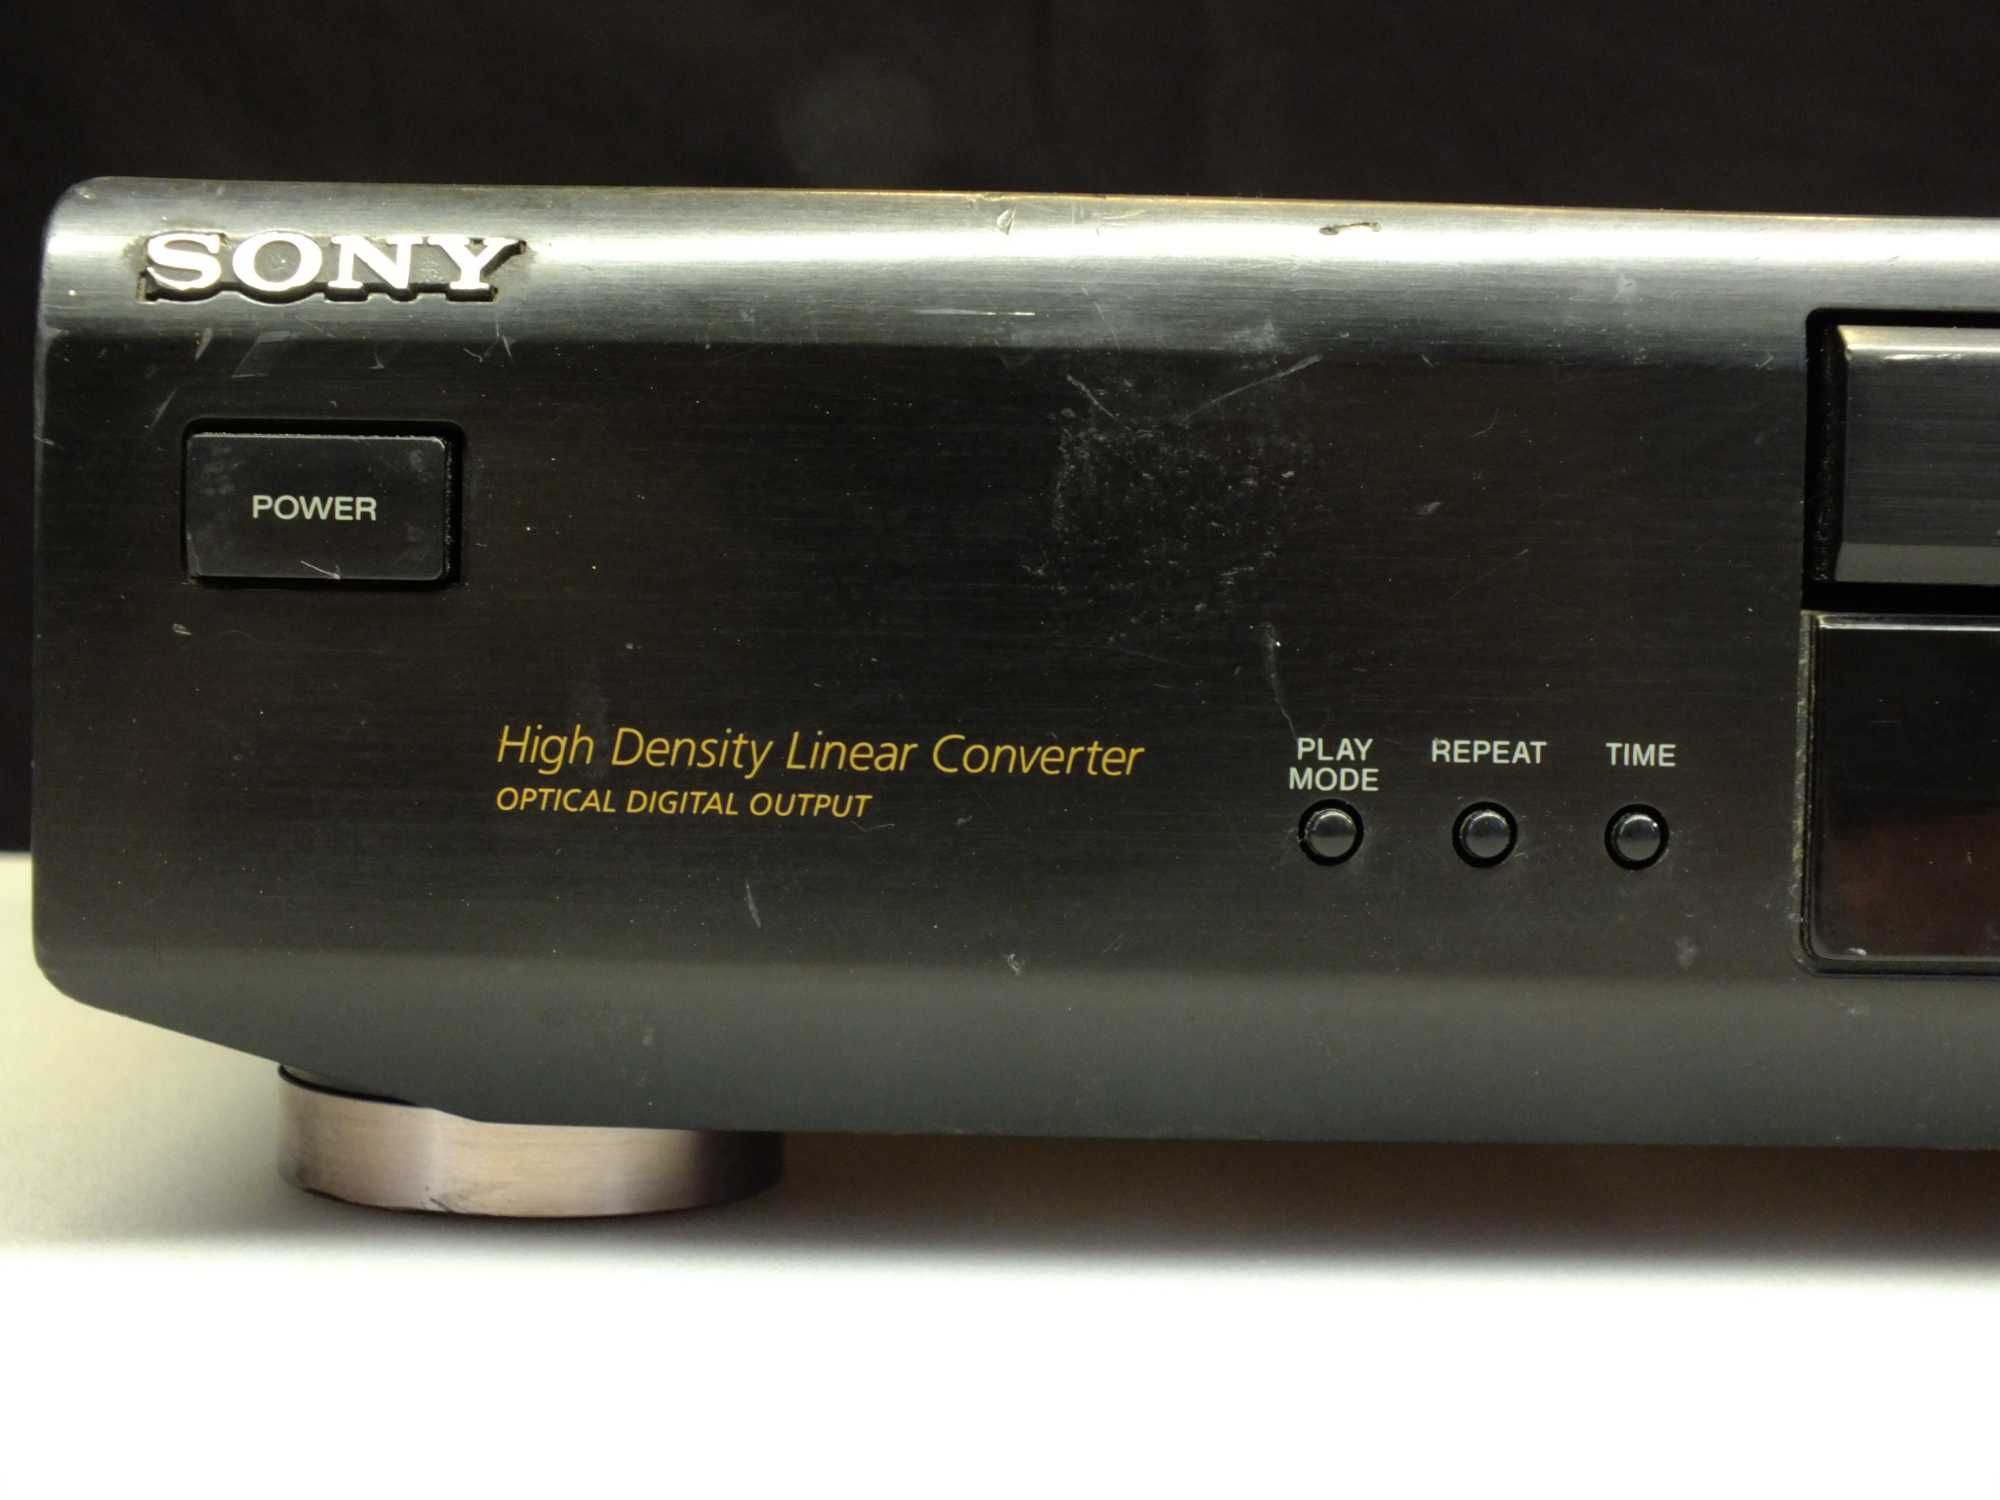 Odtwarzacz CD Sony CDP-XE210 / Sprawny